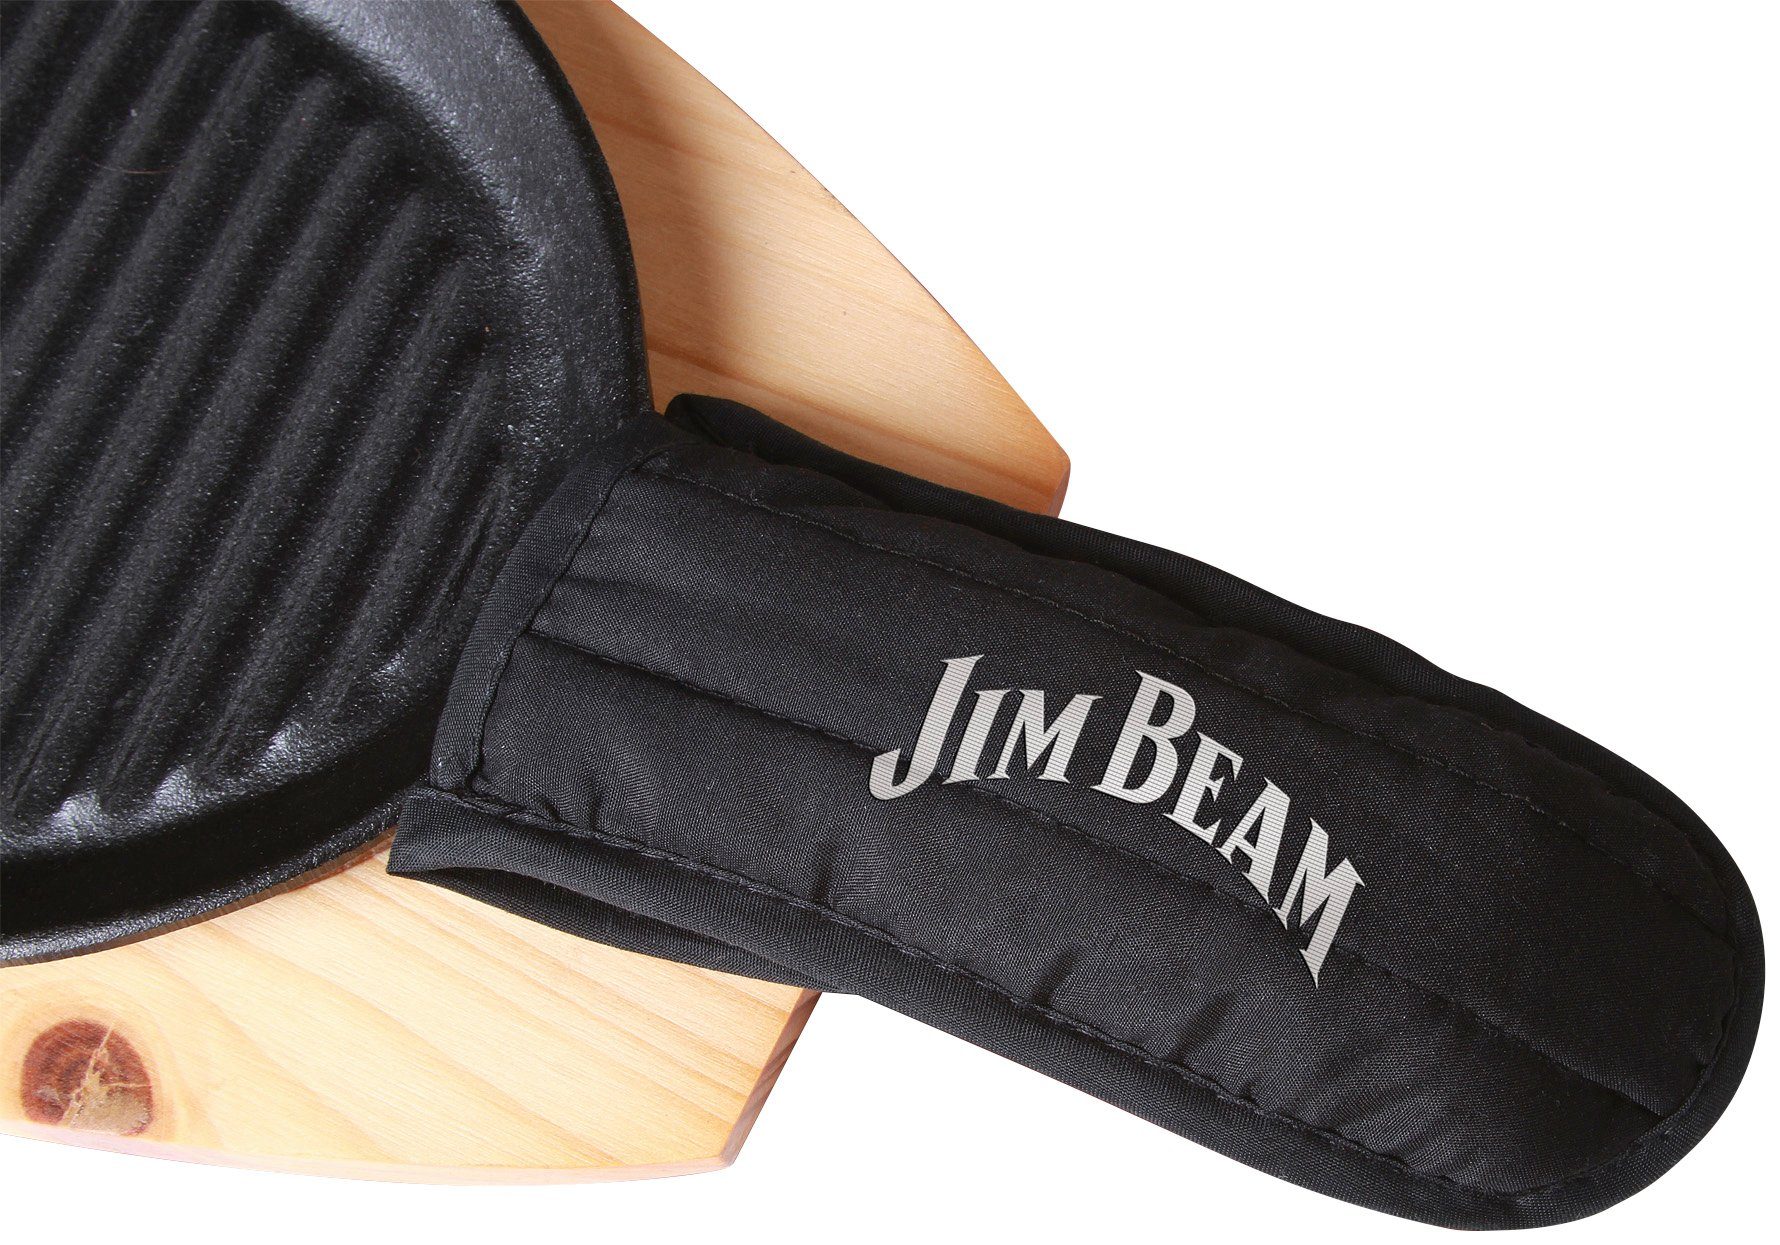 Jim Beam BBQ Stk., 4 Holzuntersetzer Gusseisen inkl. und Griffüberzug Grillpfanne, (Set)